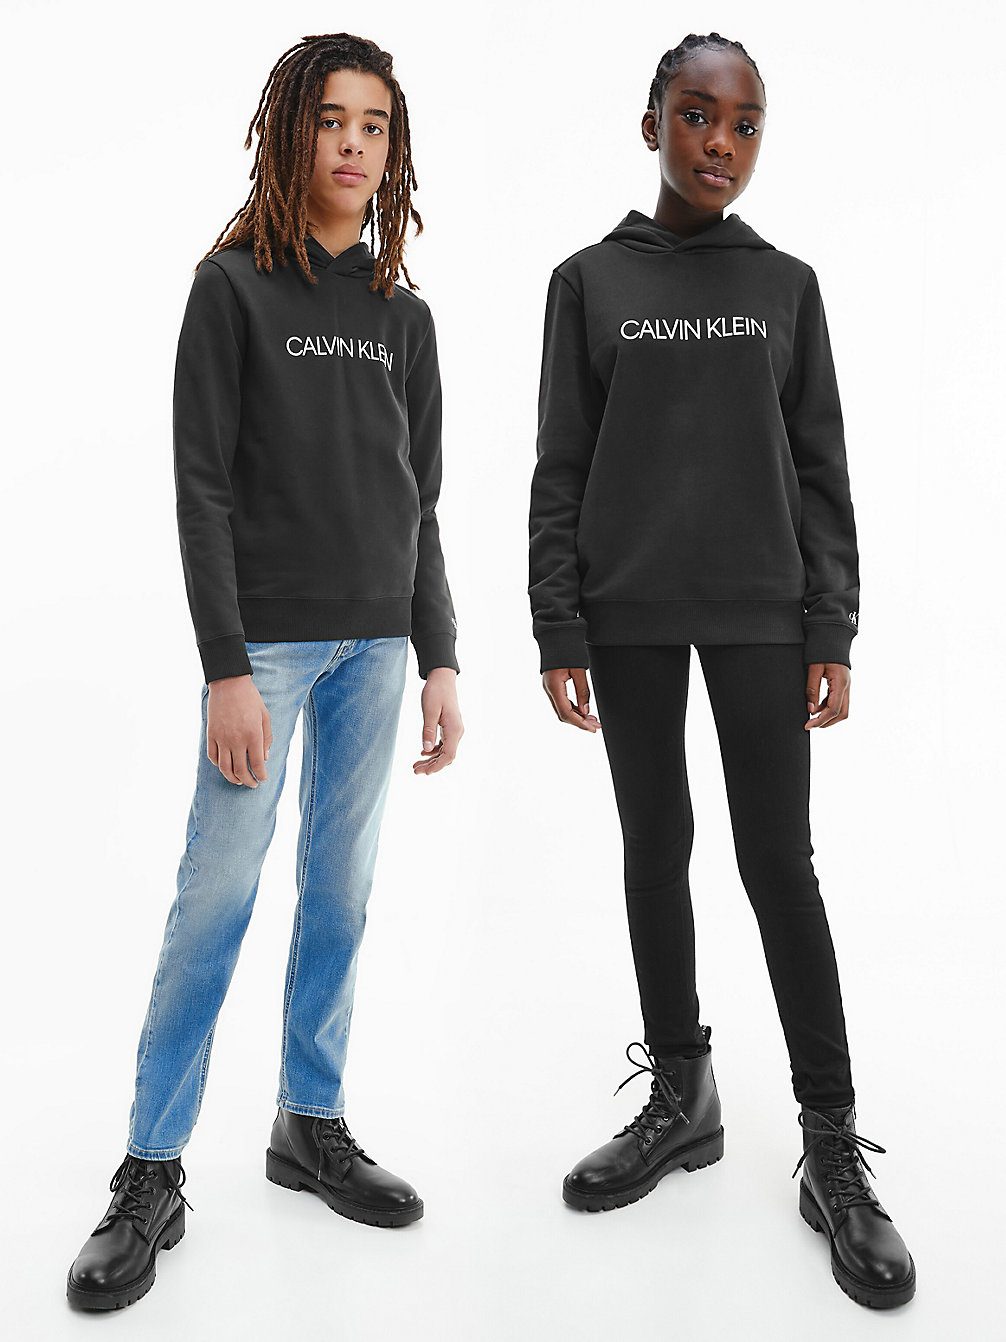 CK BLACK > Unisex-Logo-Hoodie > undefined kids unisex - Calvin Klein